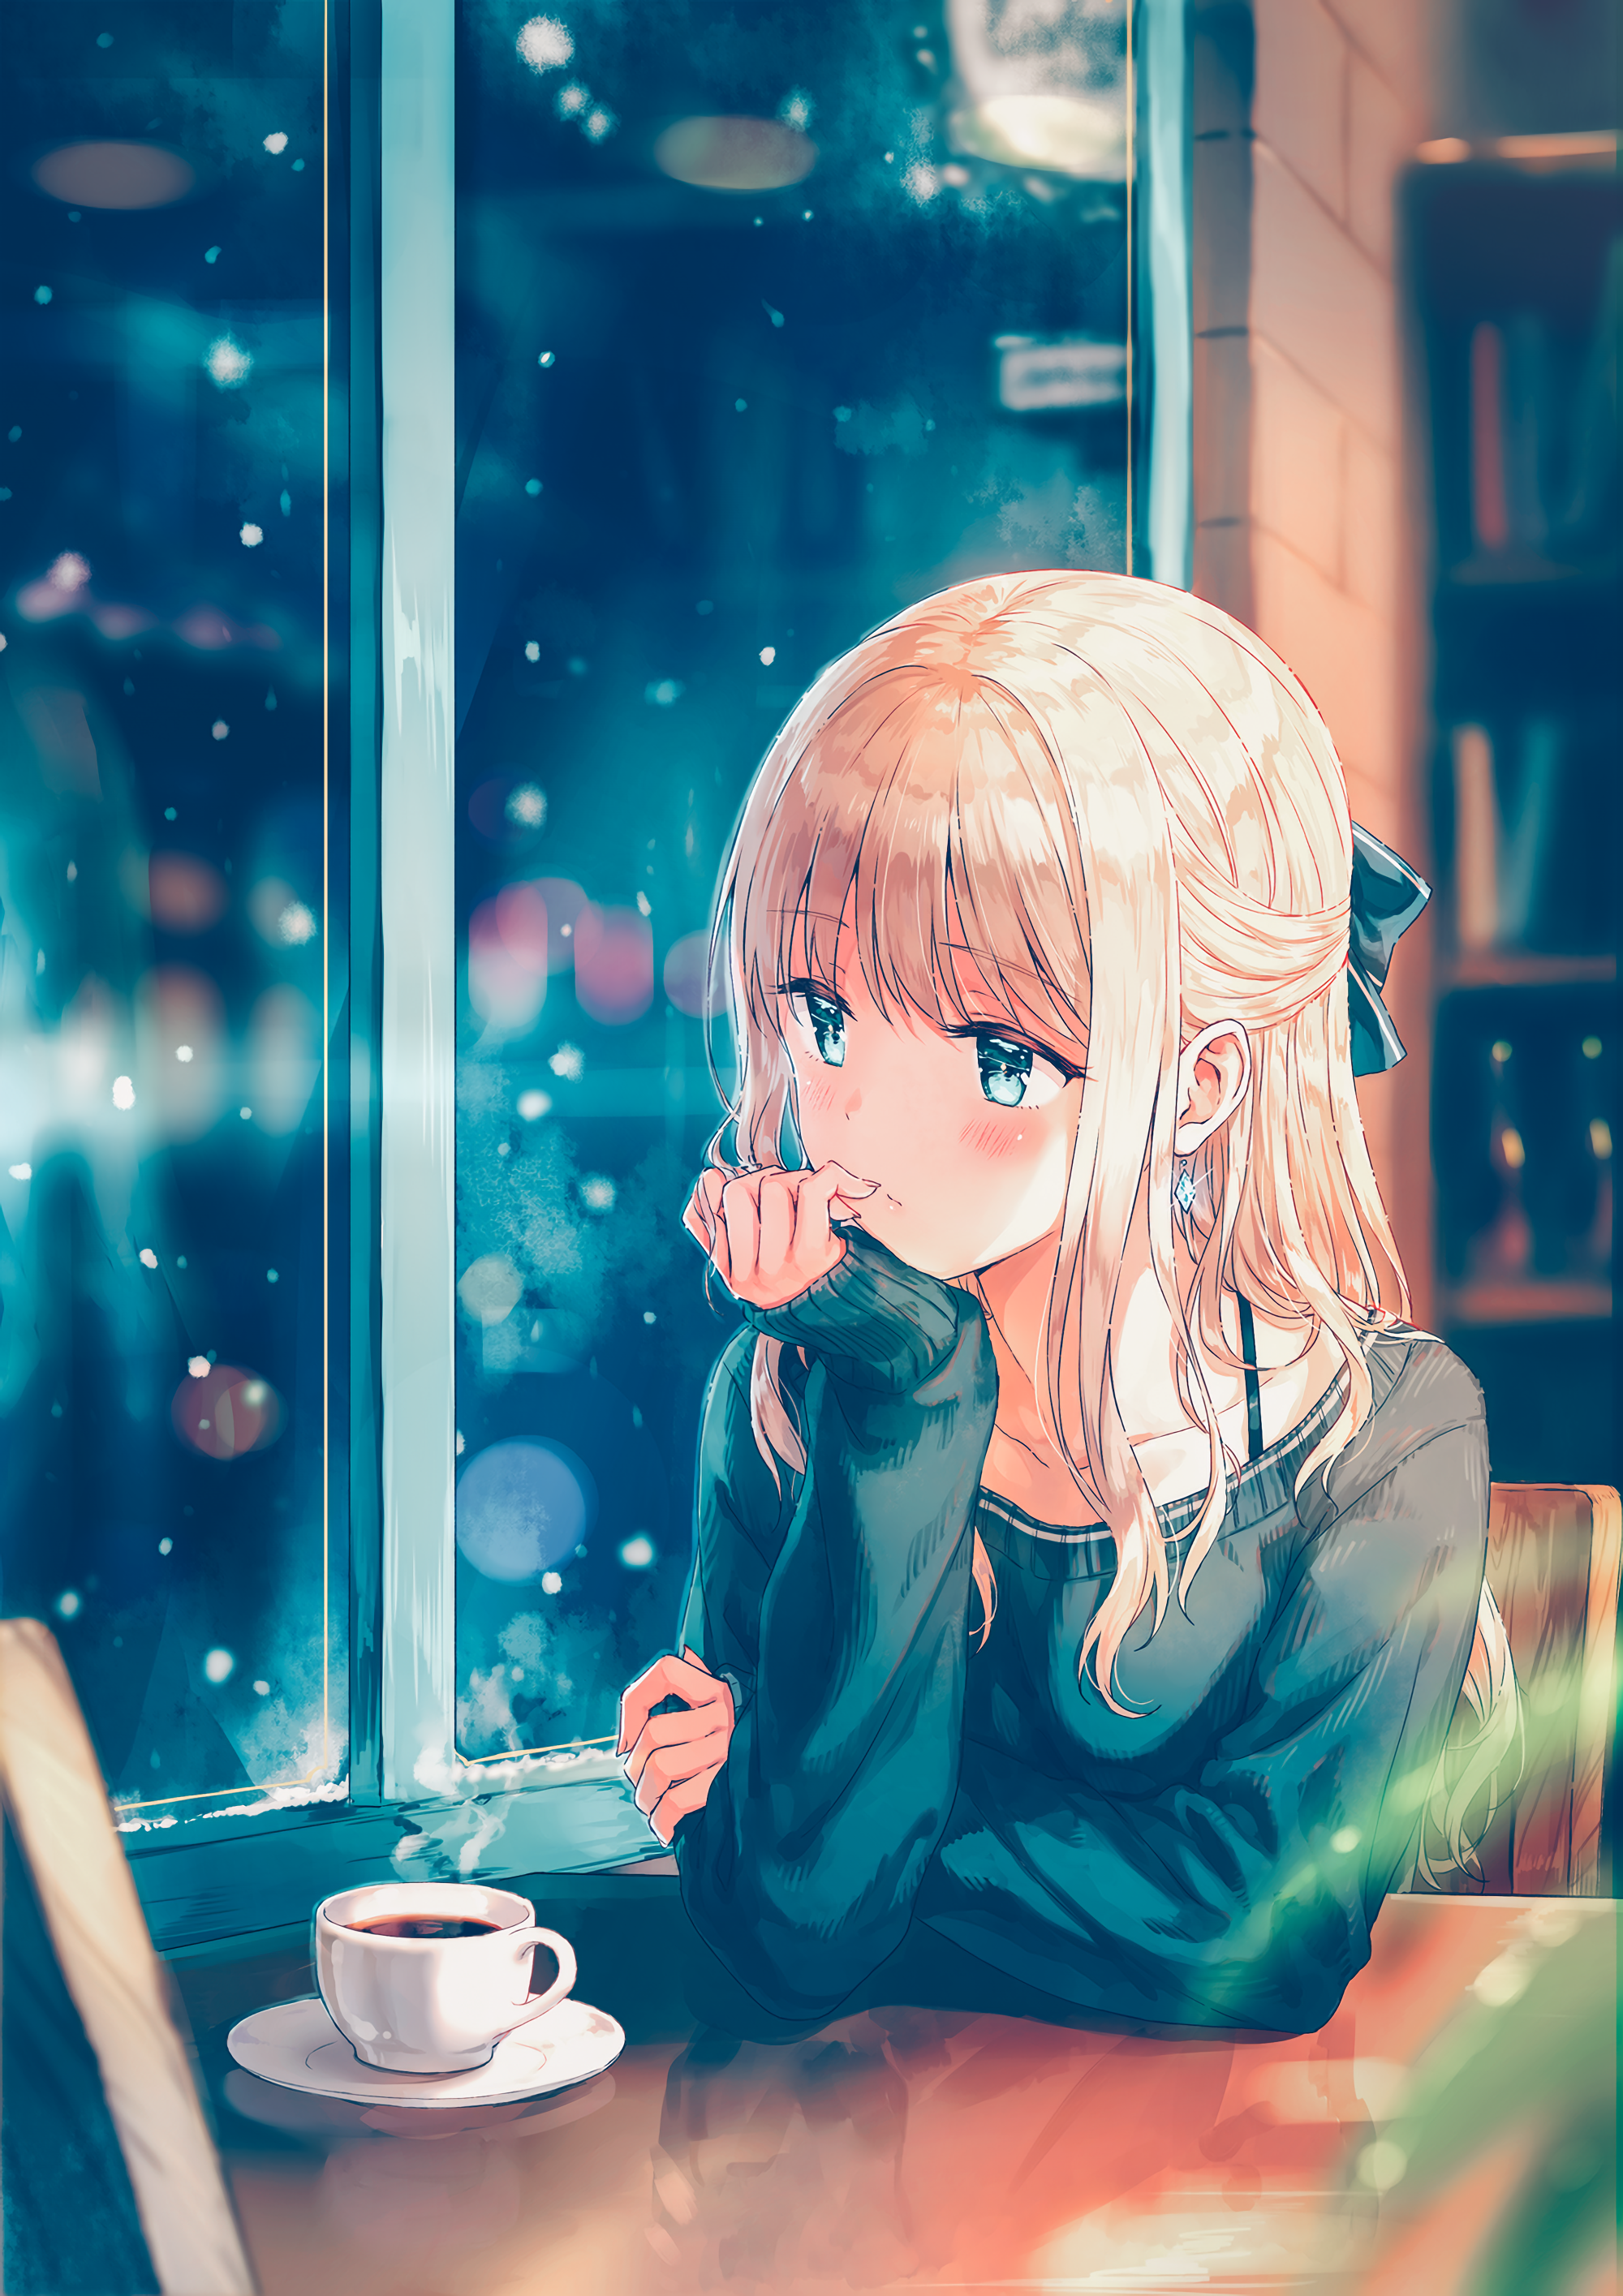 #anime, #long hair, #coffee, #anime girls, #sweater, #snow